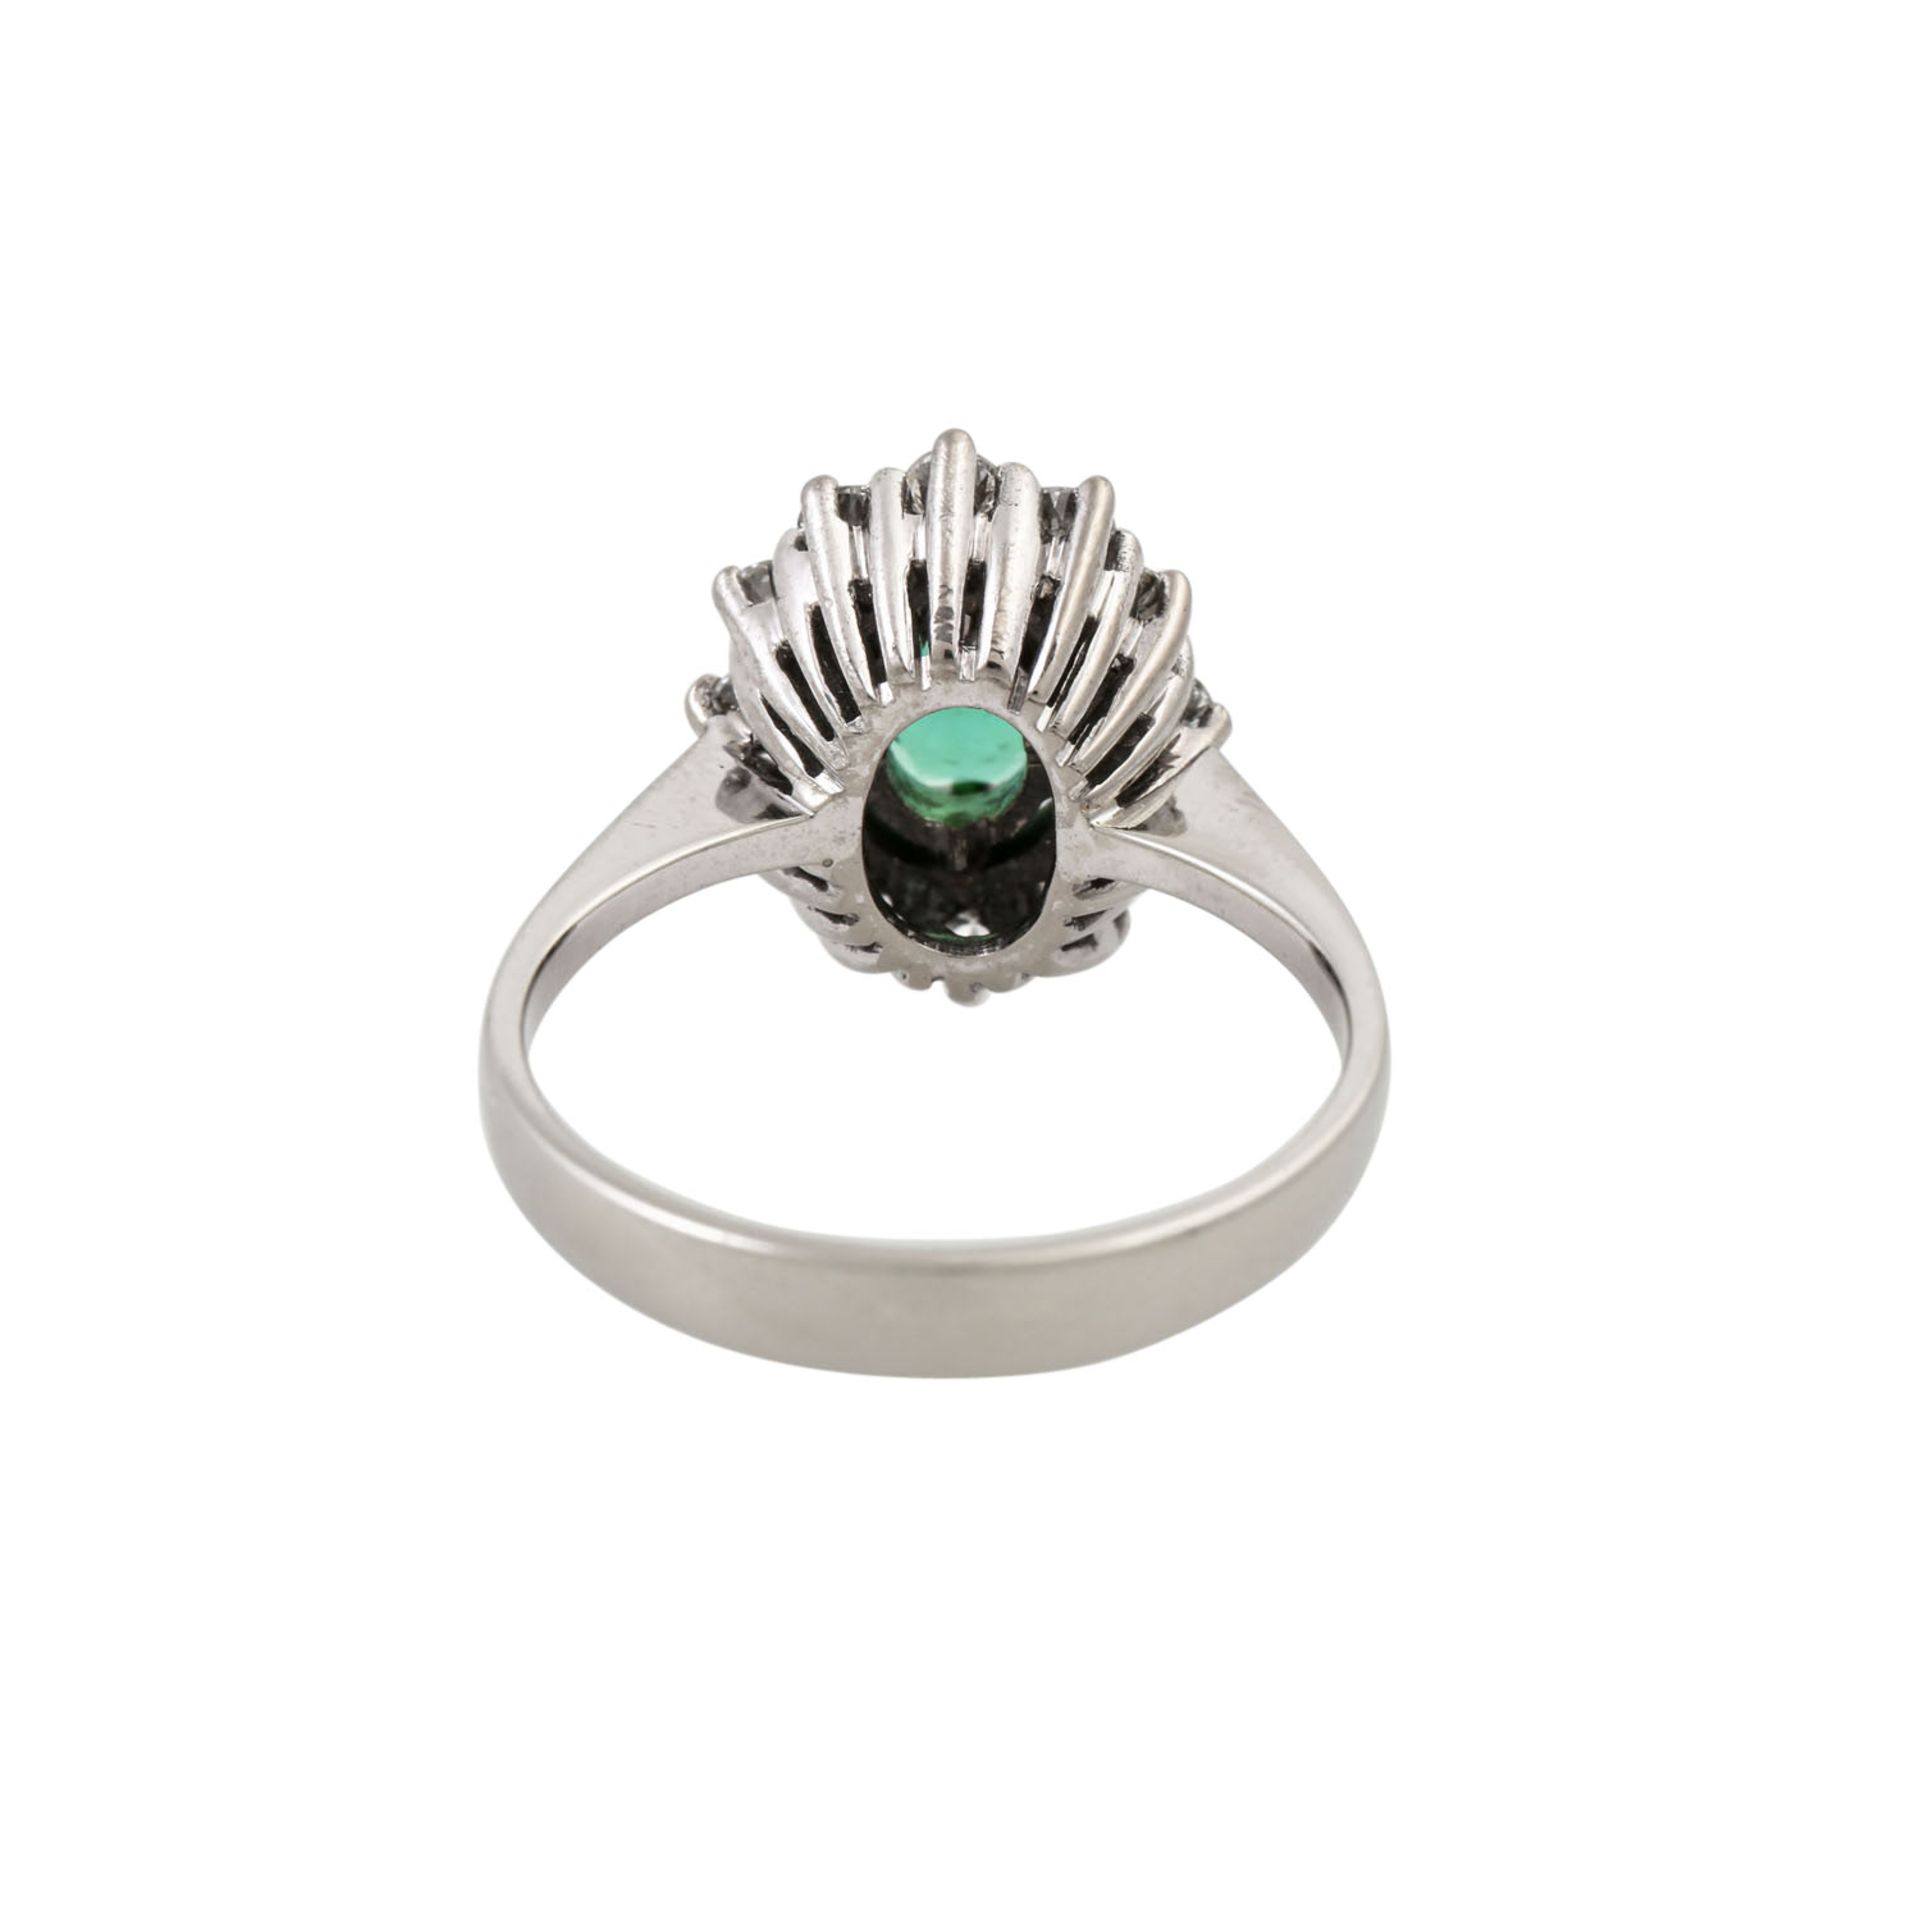 Ring mit feinem grünen Turmalin und Brillanten von zus. ca. 0,6 ct, gute Farbe u. Rei - Image 4 of 4